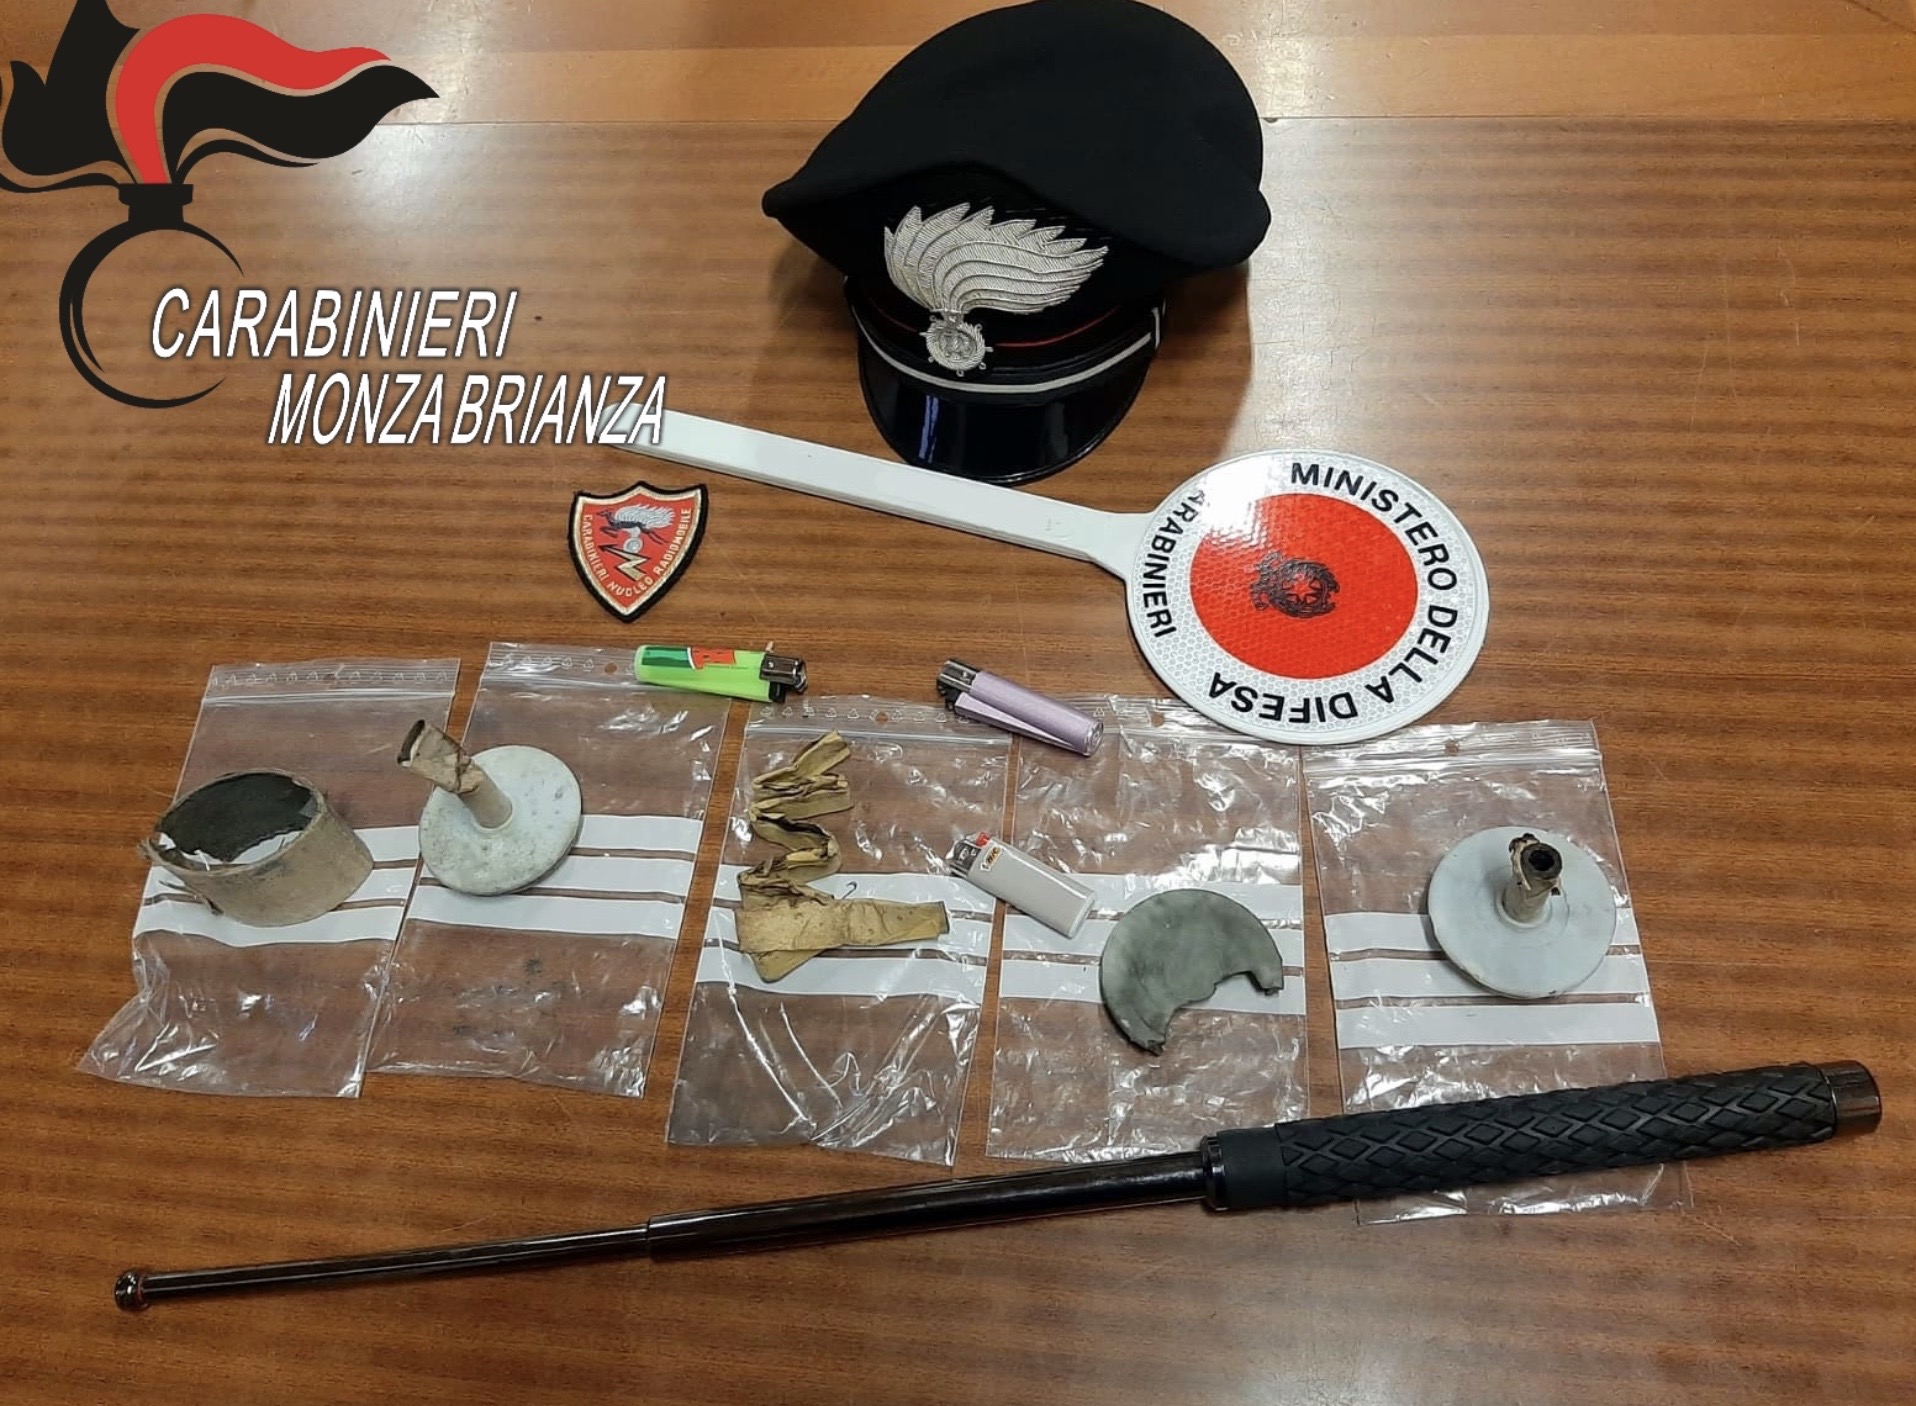 Fanno esplodere bomba carta per estorsione: arrestati in tre dai carabinieri di Monza